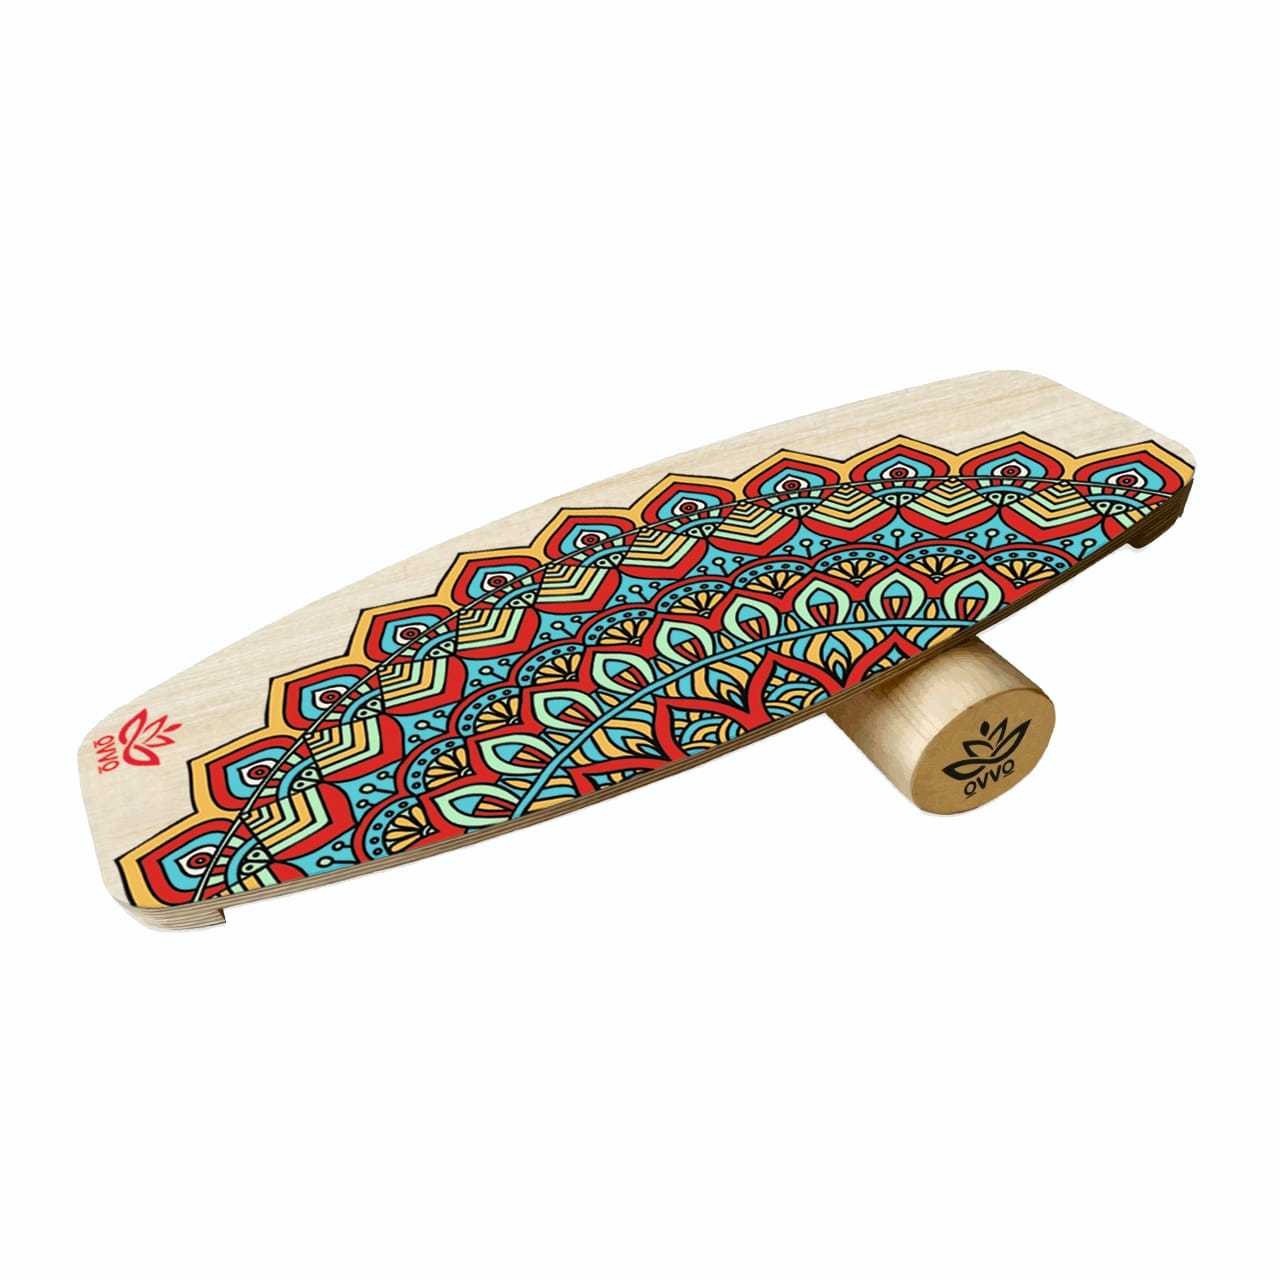 Spirit Balance Board | Surf style balance board | Wooden Wobble Balance Board | WoodNotion OVVO